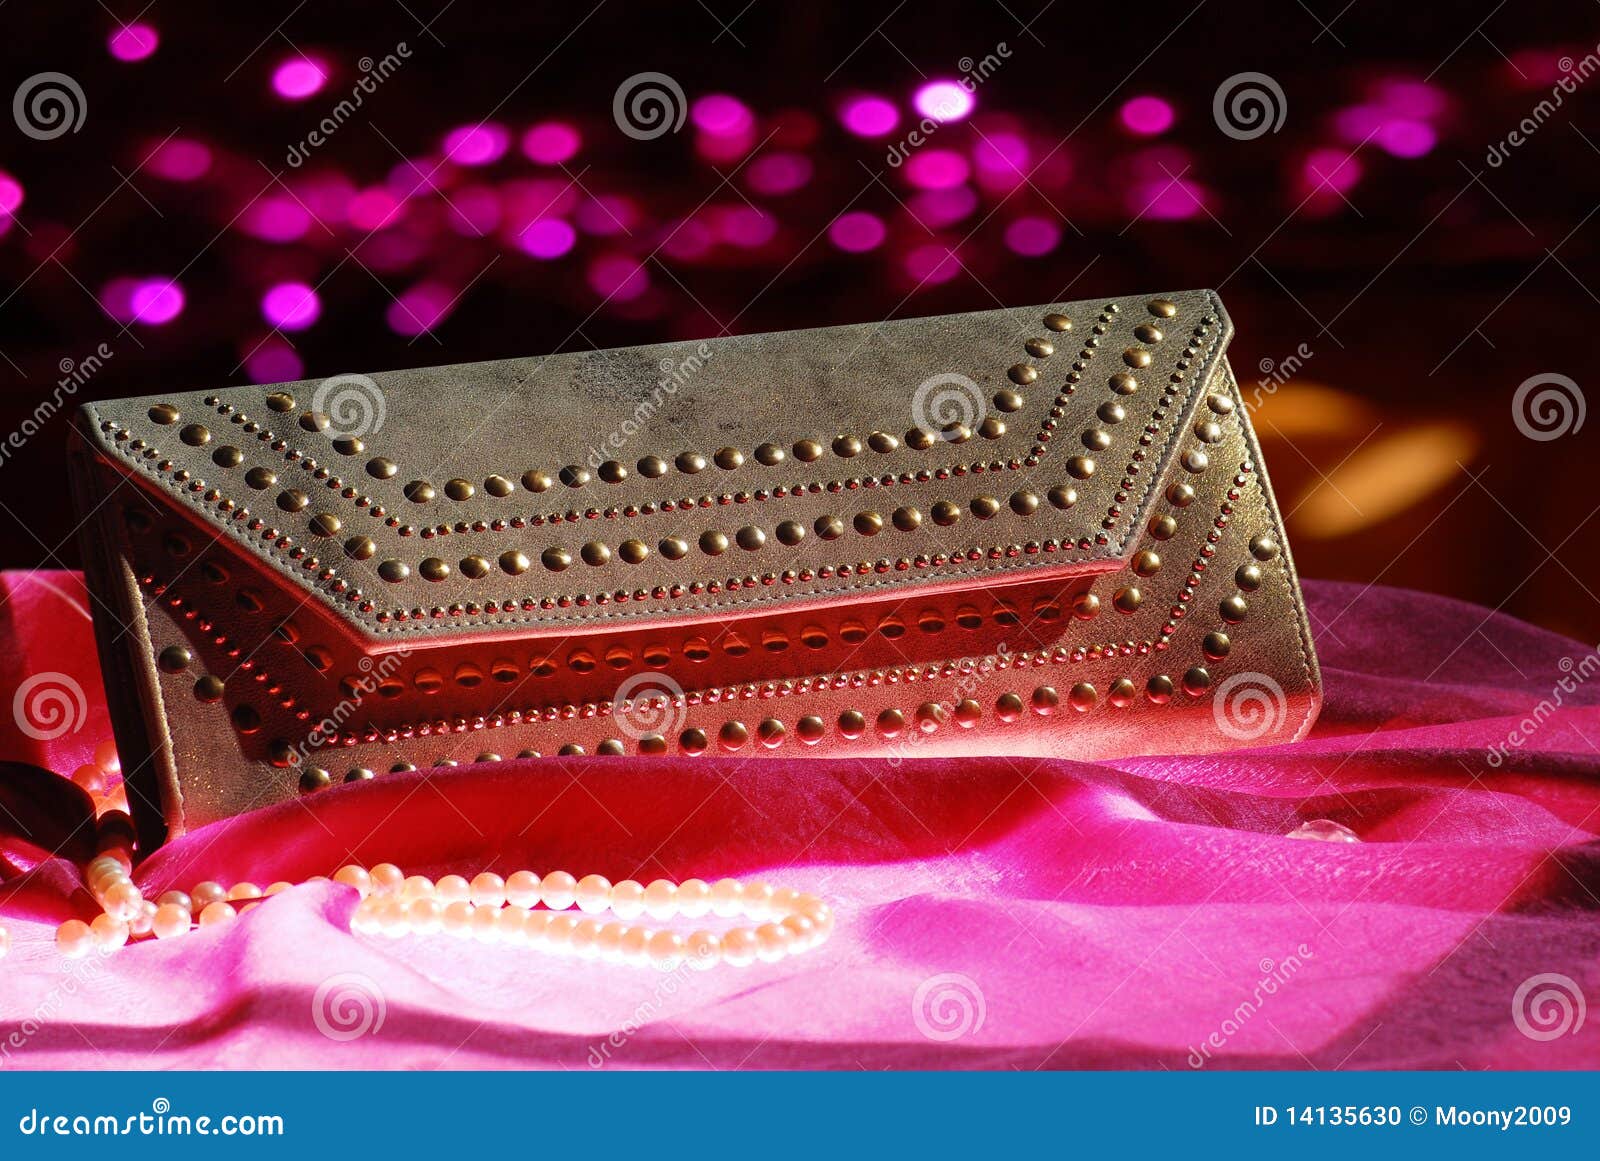 दुलहन के लिए खूबसूरत क्लच पर्स | Beautiful clutch purse for bride दुलहन के  लिए खूबसूरत क्लच पर्स